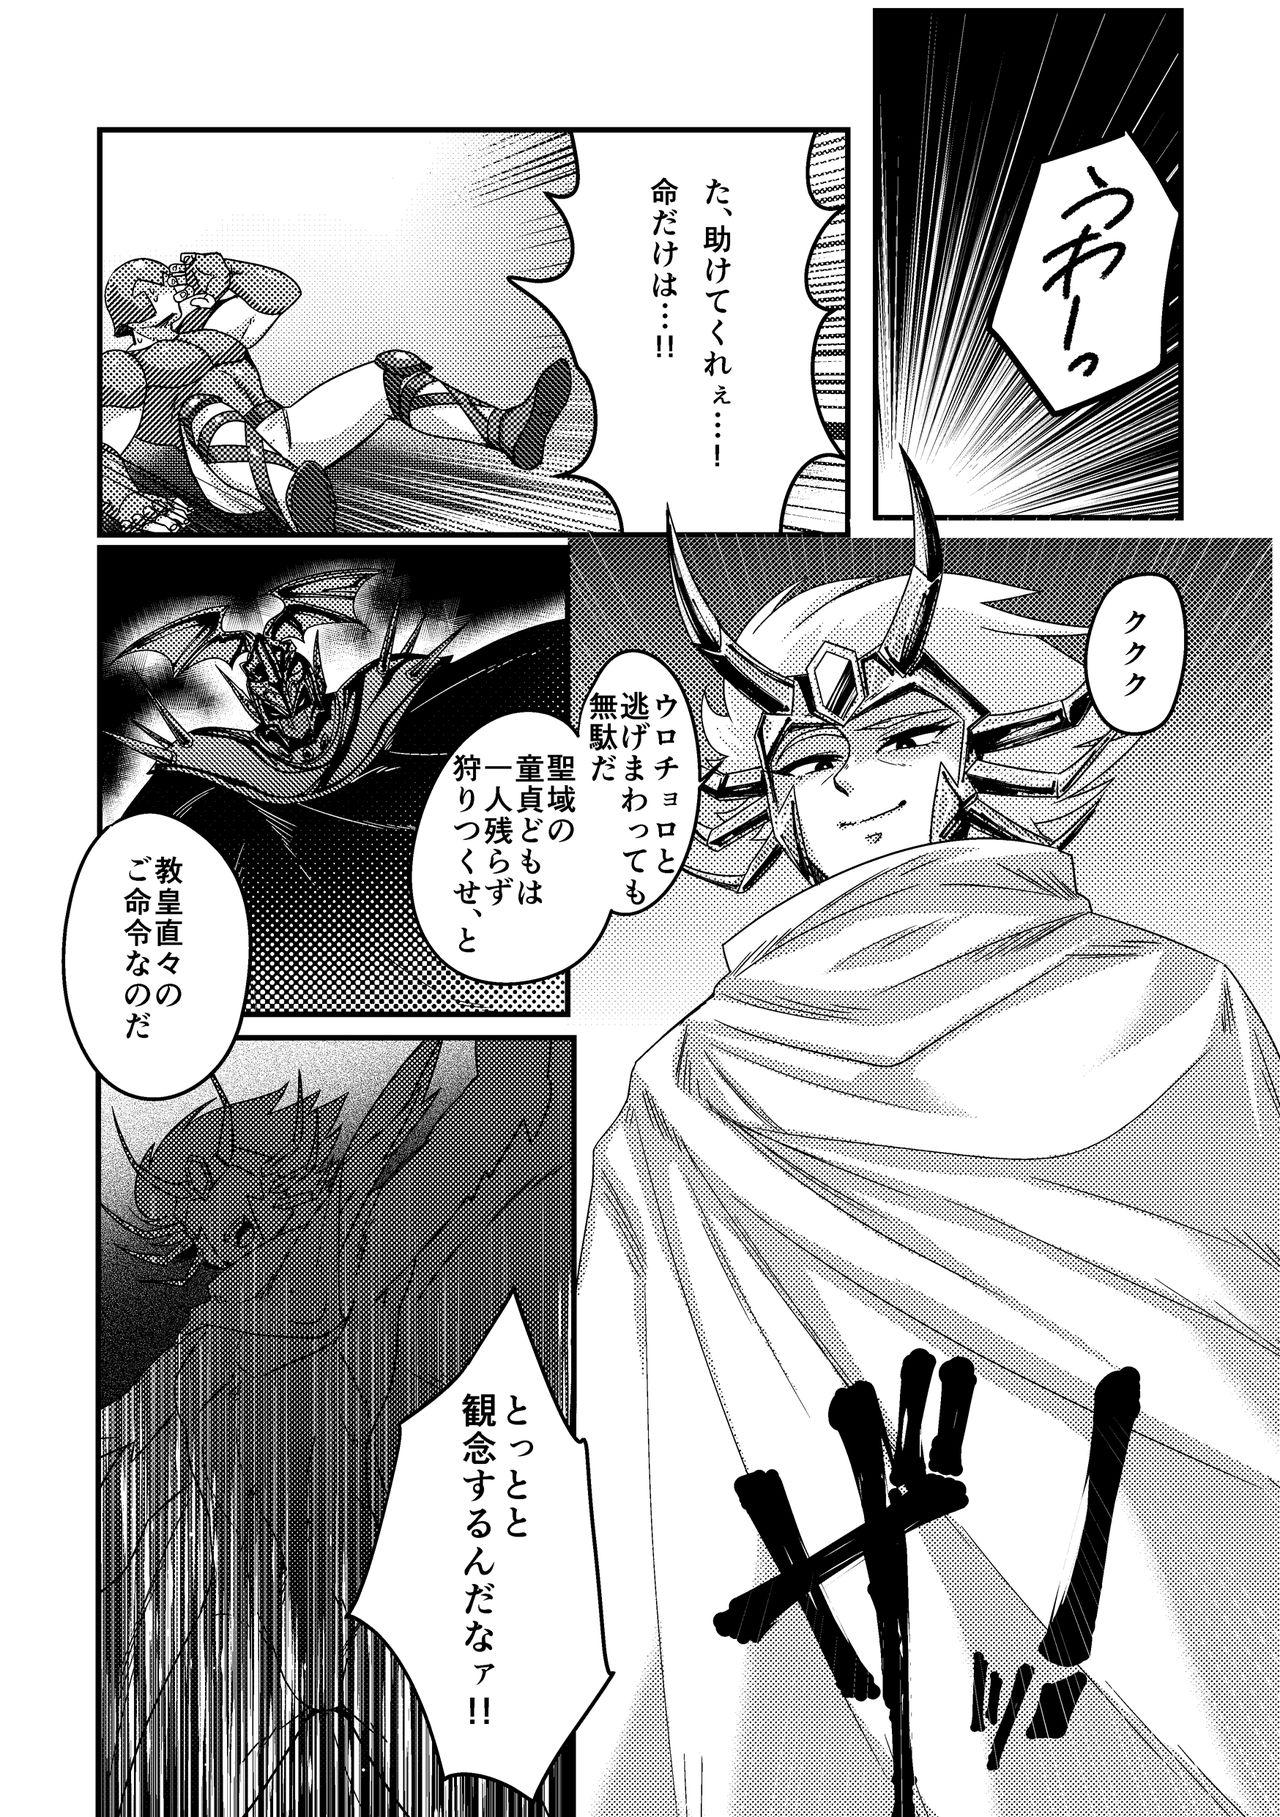  Sekishiki o Kayotte Anoyo e Ike! - Saint seiya Gay Broken - Page 2